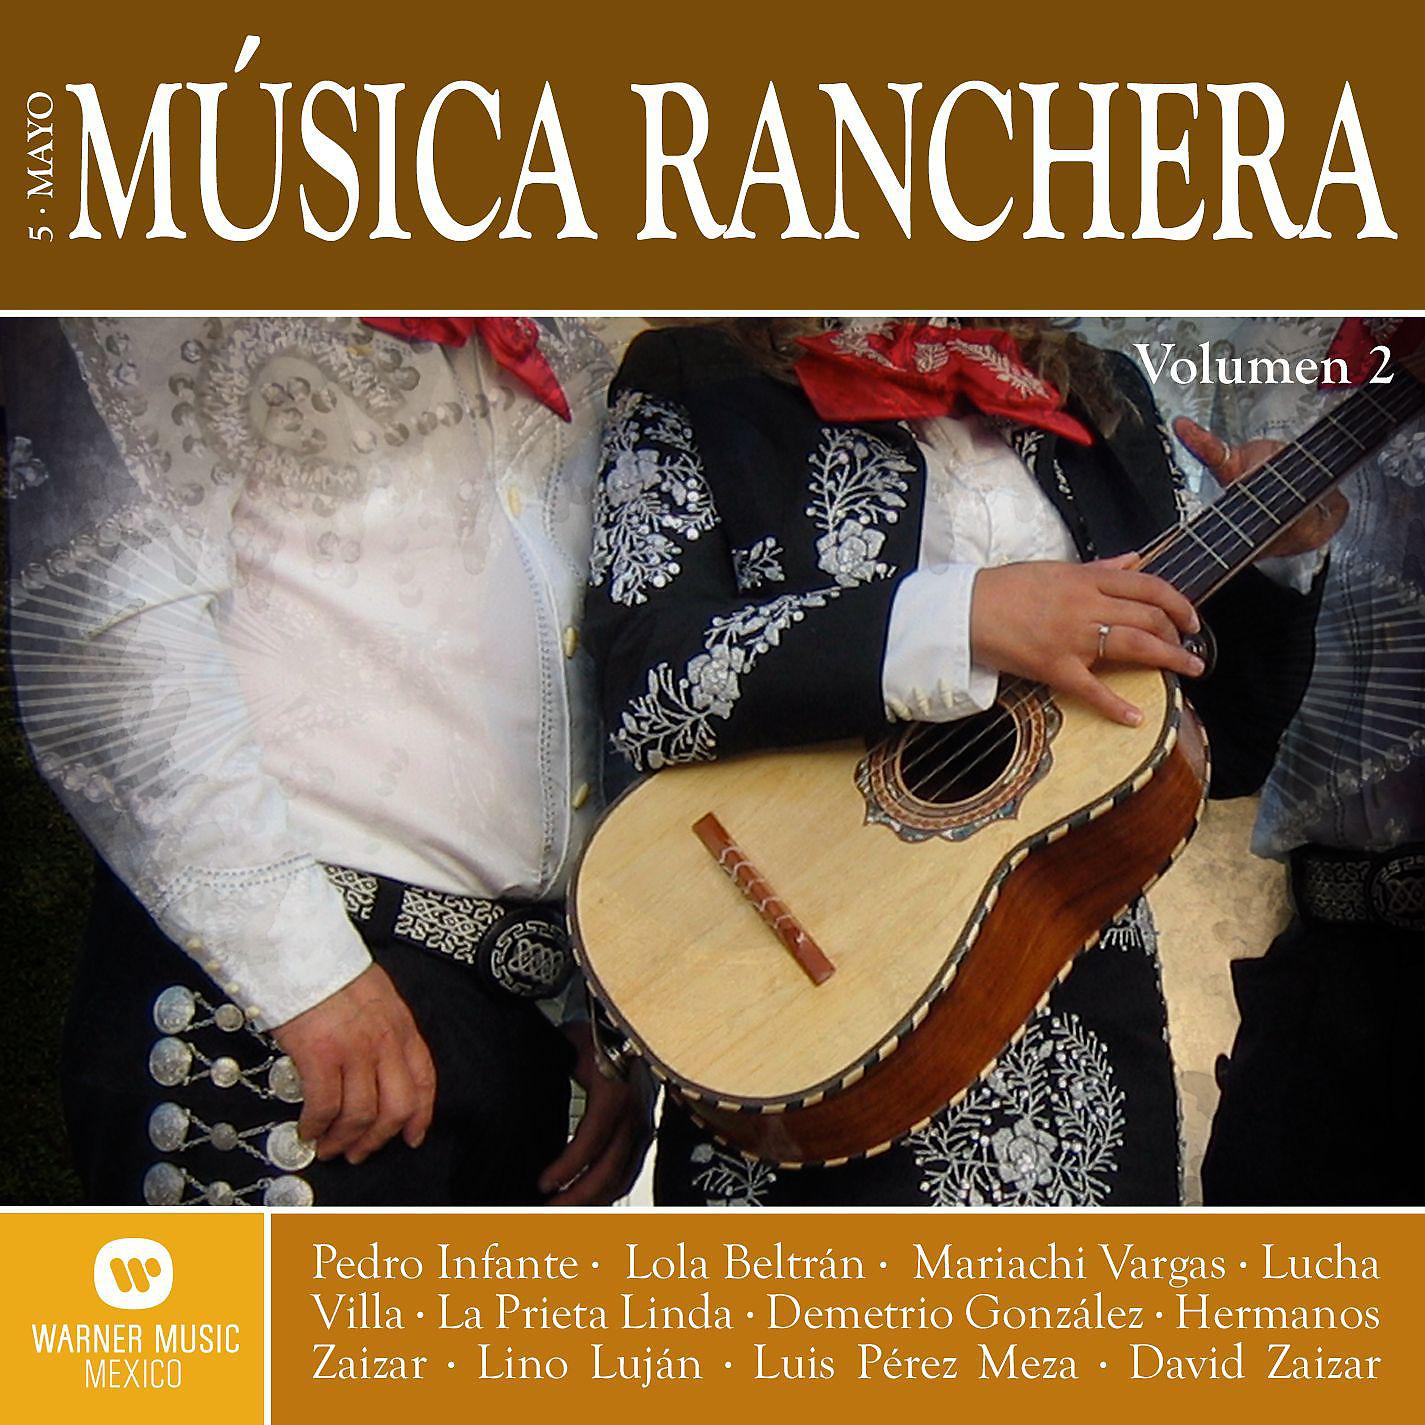 Постер альбома Musica Ranchera "Cinco de Mayo" Vol. 2